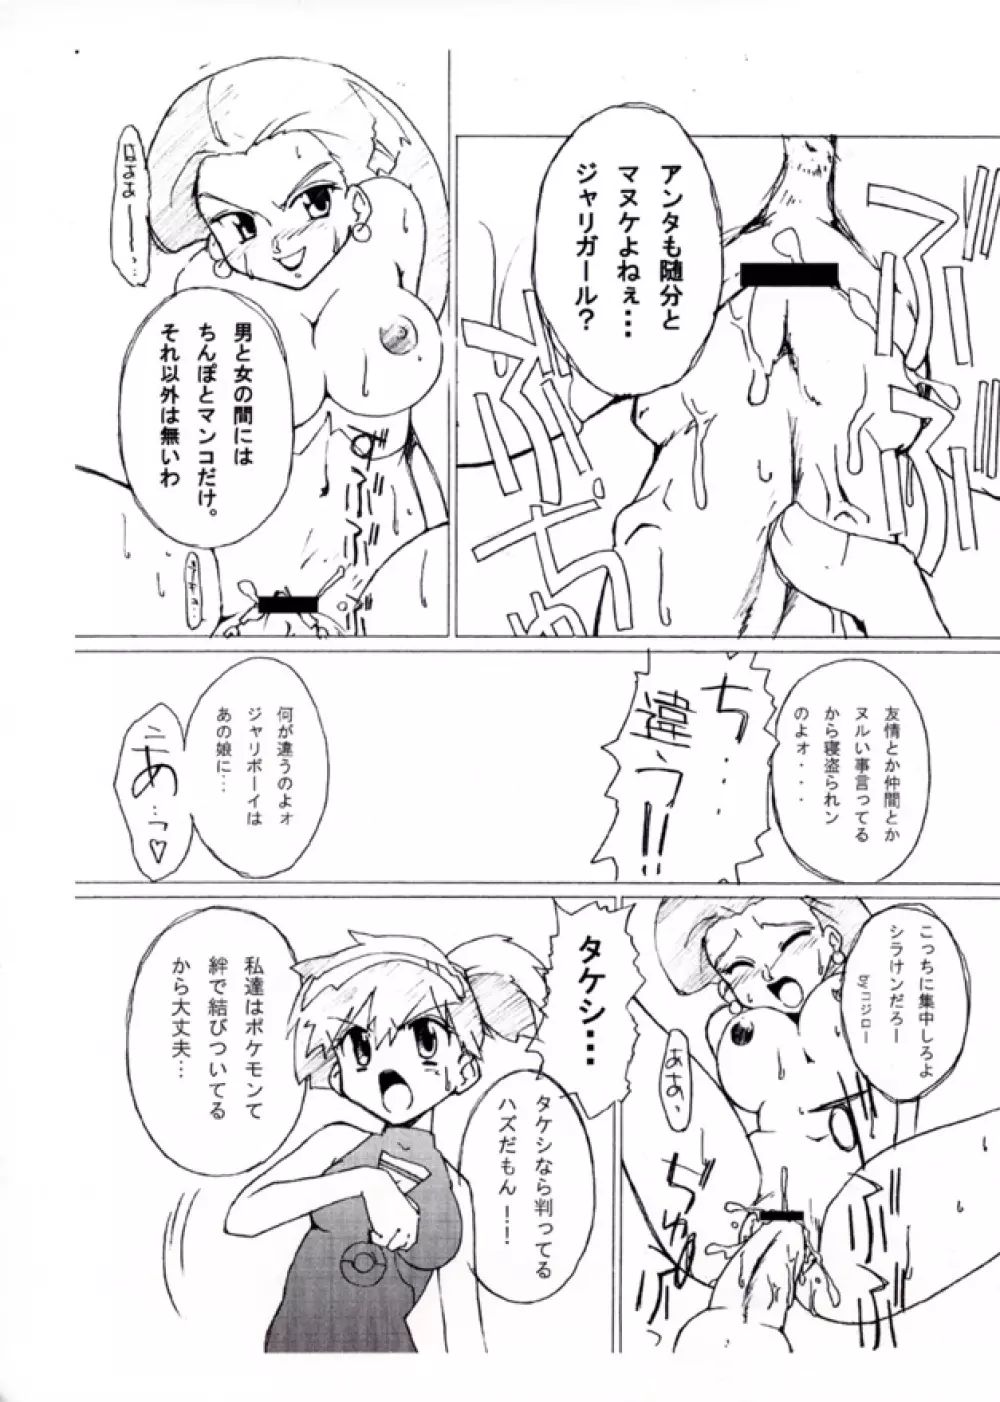 KASUMIX XPLOSION Kasumi Comic part5 30ページ